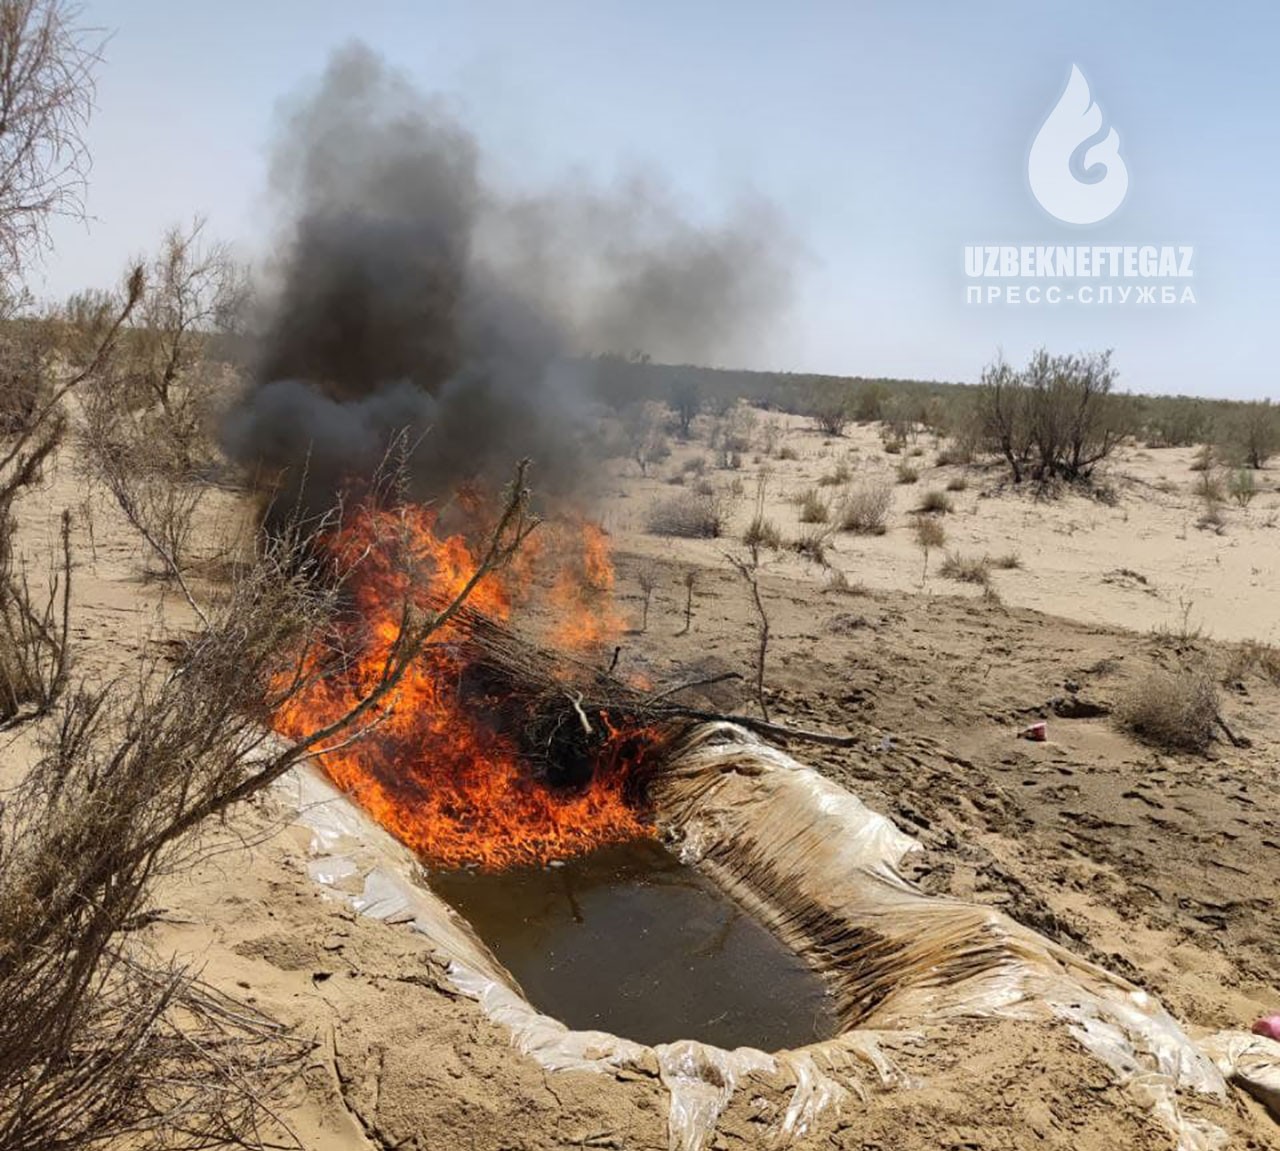 В Узбекистане на месторождении обнаружили попытки хищения газового конденсата, нанесшие серьезный ущерб